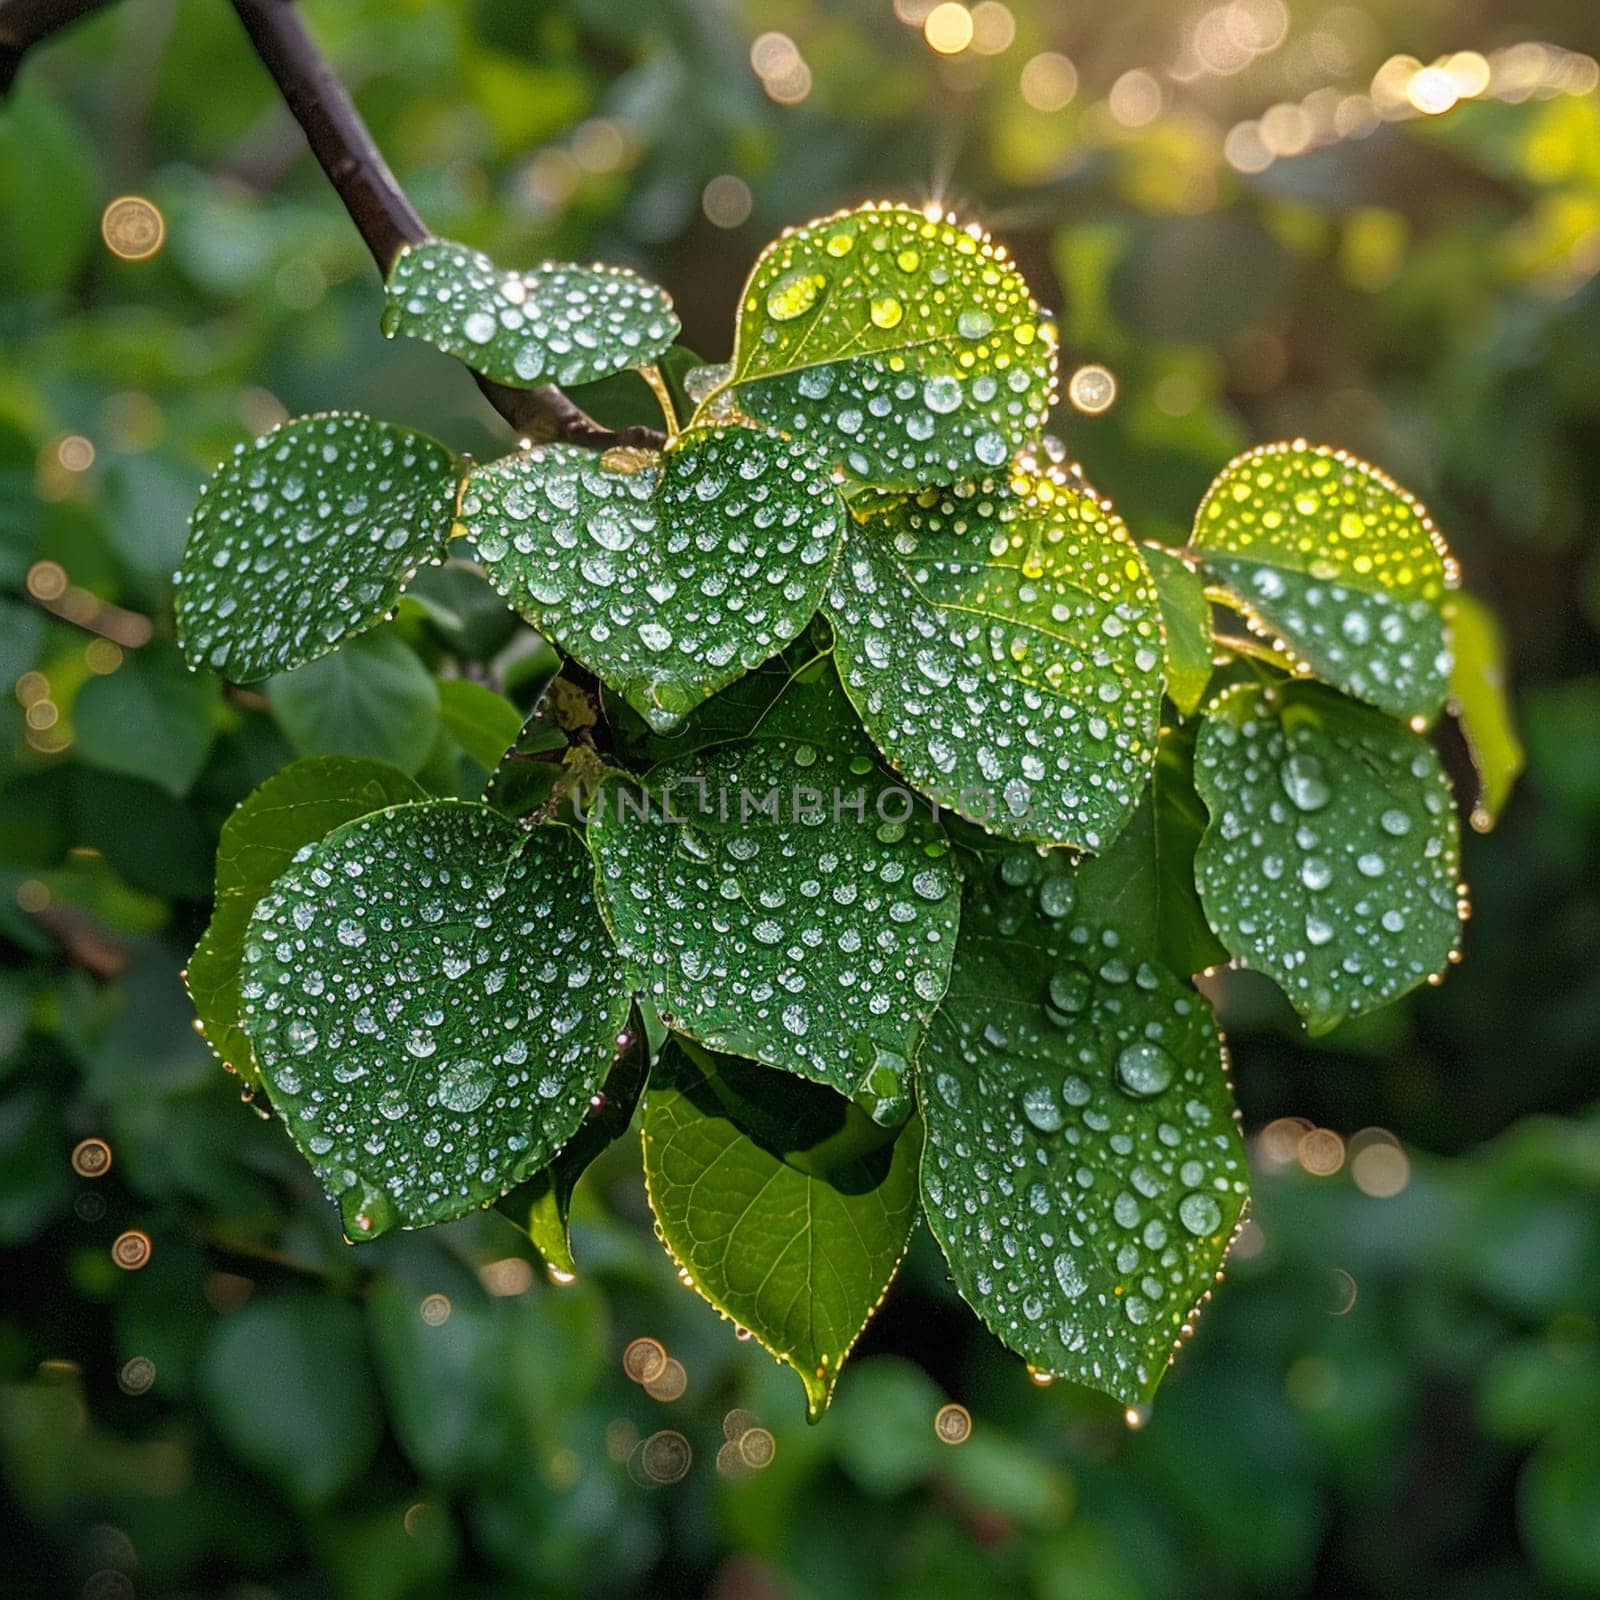 Glistening dew on fresh green leaves, evoking morning freshness and nature's awakening.